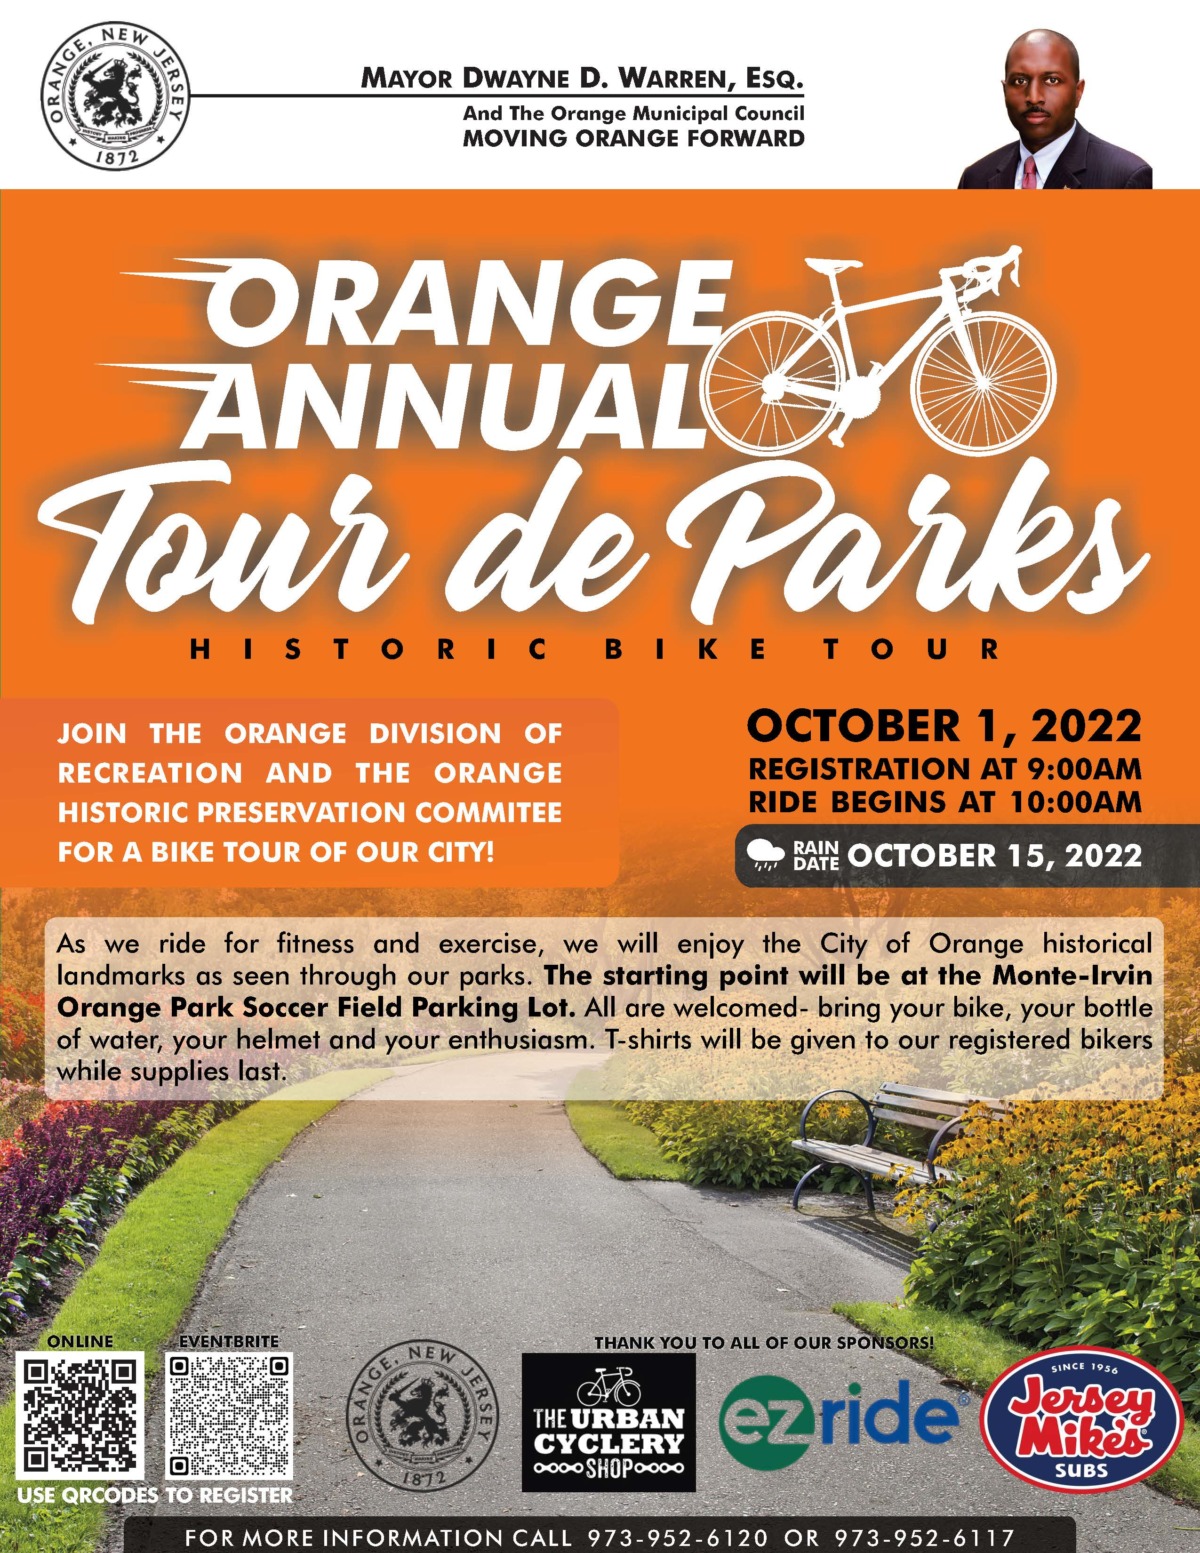 Orange Annual Tour de Parks October 1, 2022 Orange City Council